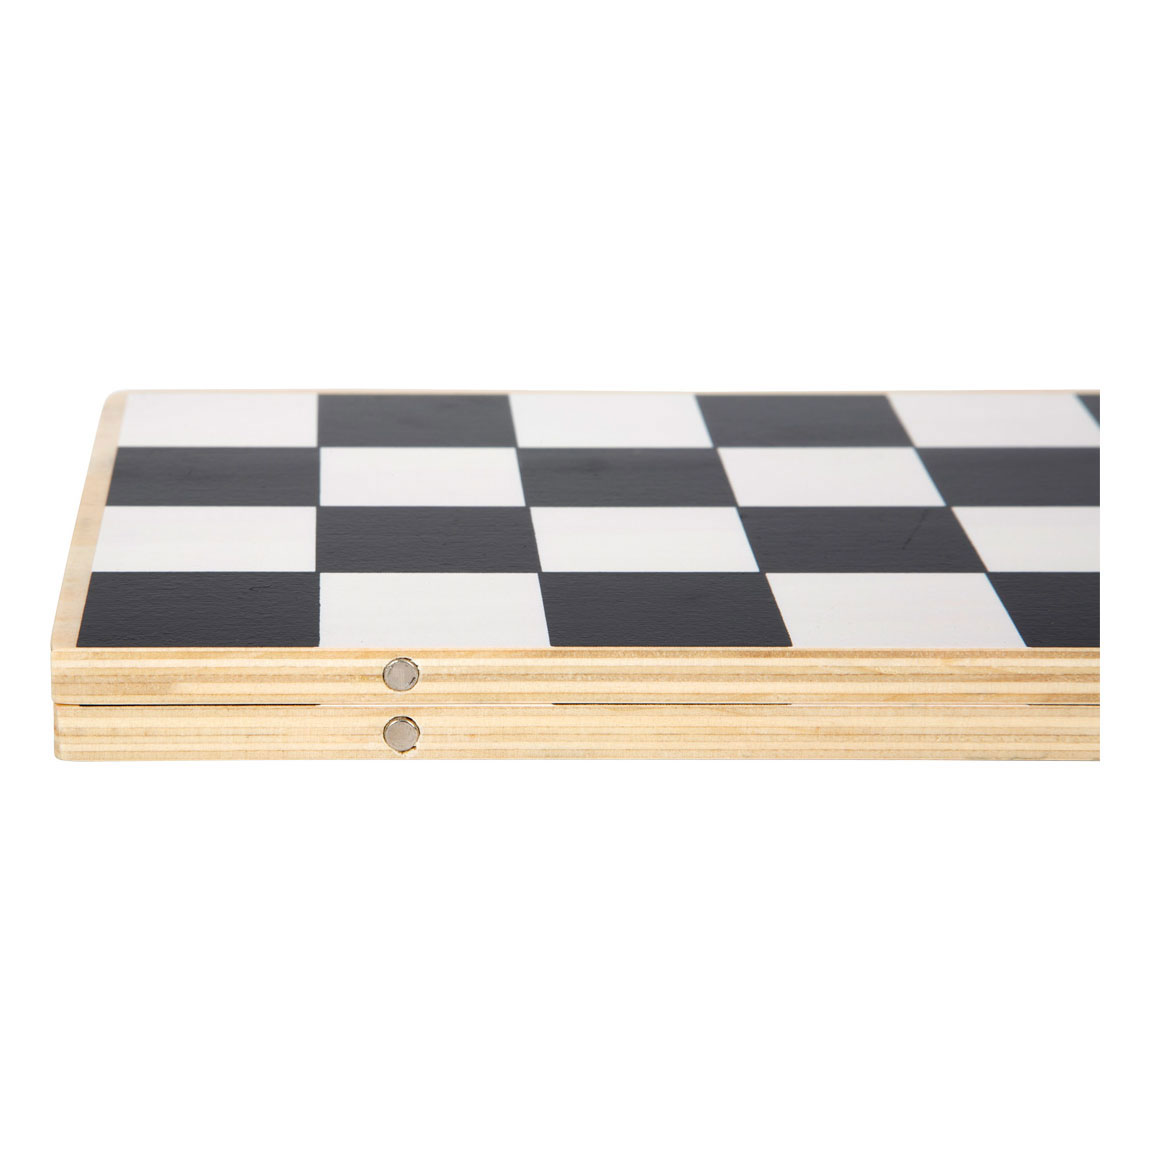 Small Foot - Schach- und Backgammonspiel (Golden Edition)